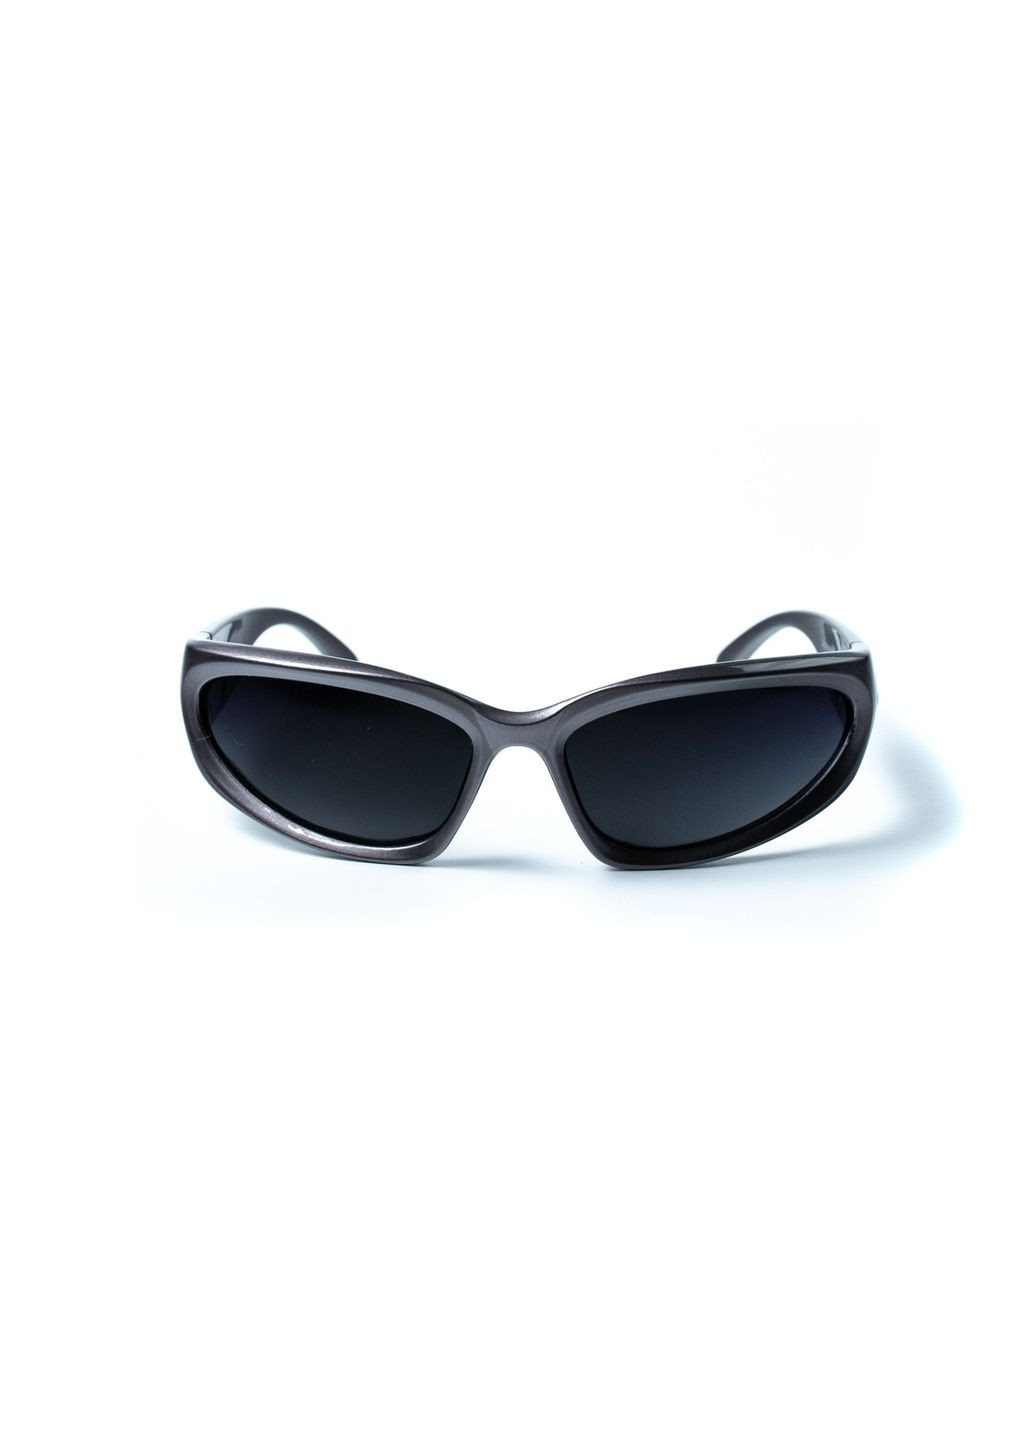 Солнцезащитные очки с поляризацией Спорт женские LuckyLOOK 445-390 (292735638)